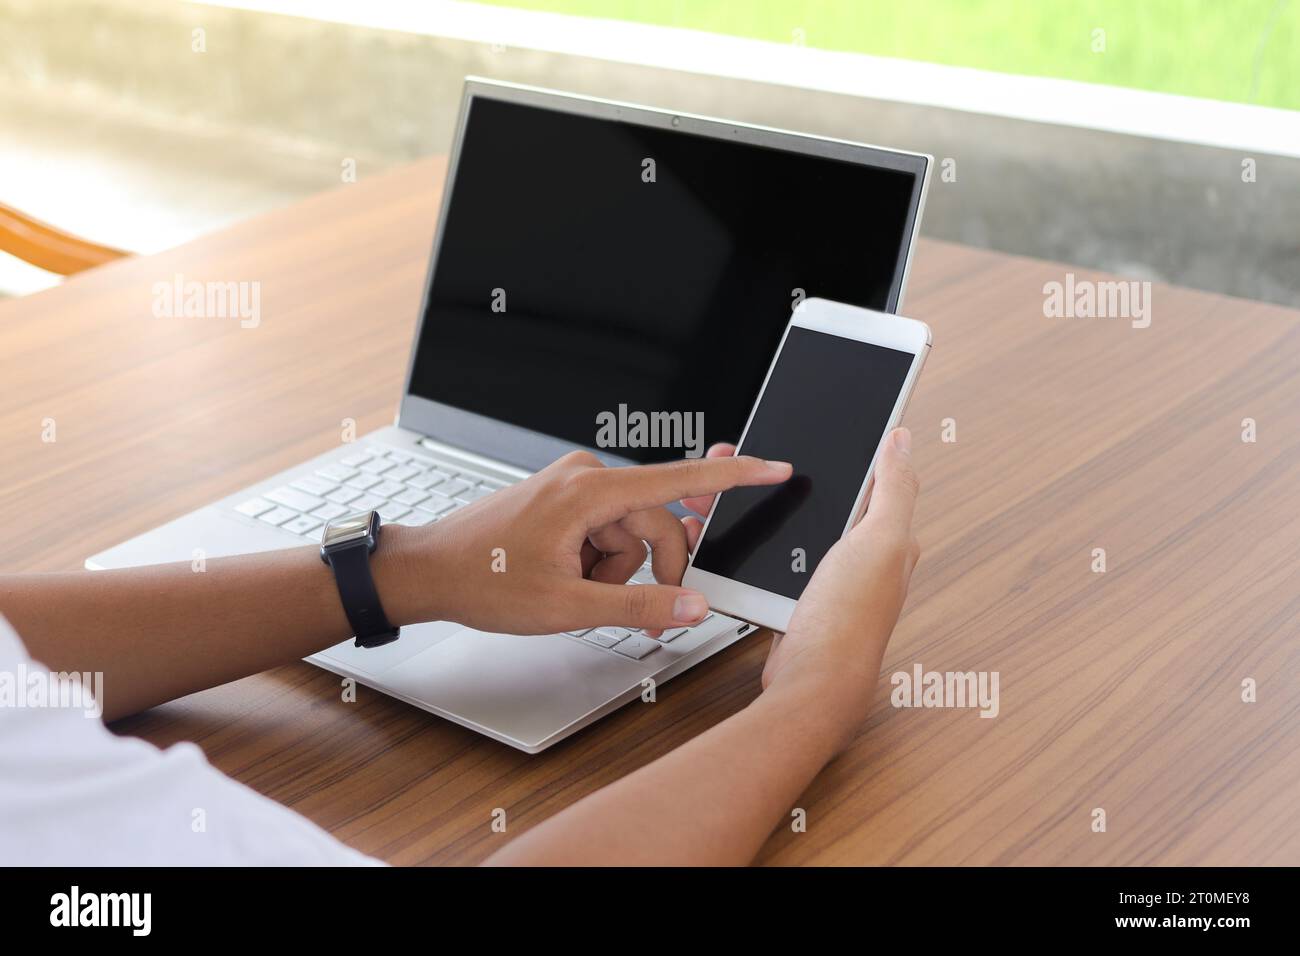 Cierre de la mano del hombre de negocios tocando la pantalla en blanco del teléfono móvil con el ordenador portátil al lado en la mesa. Pantalla de smartphone y portátil simulada Foto de stock